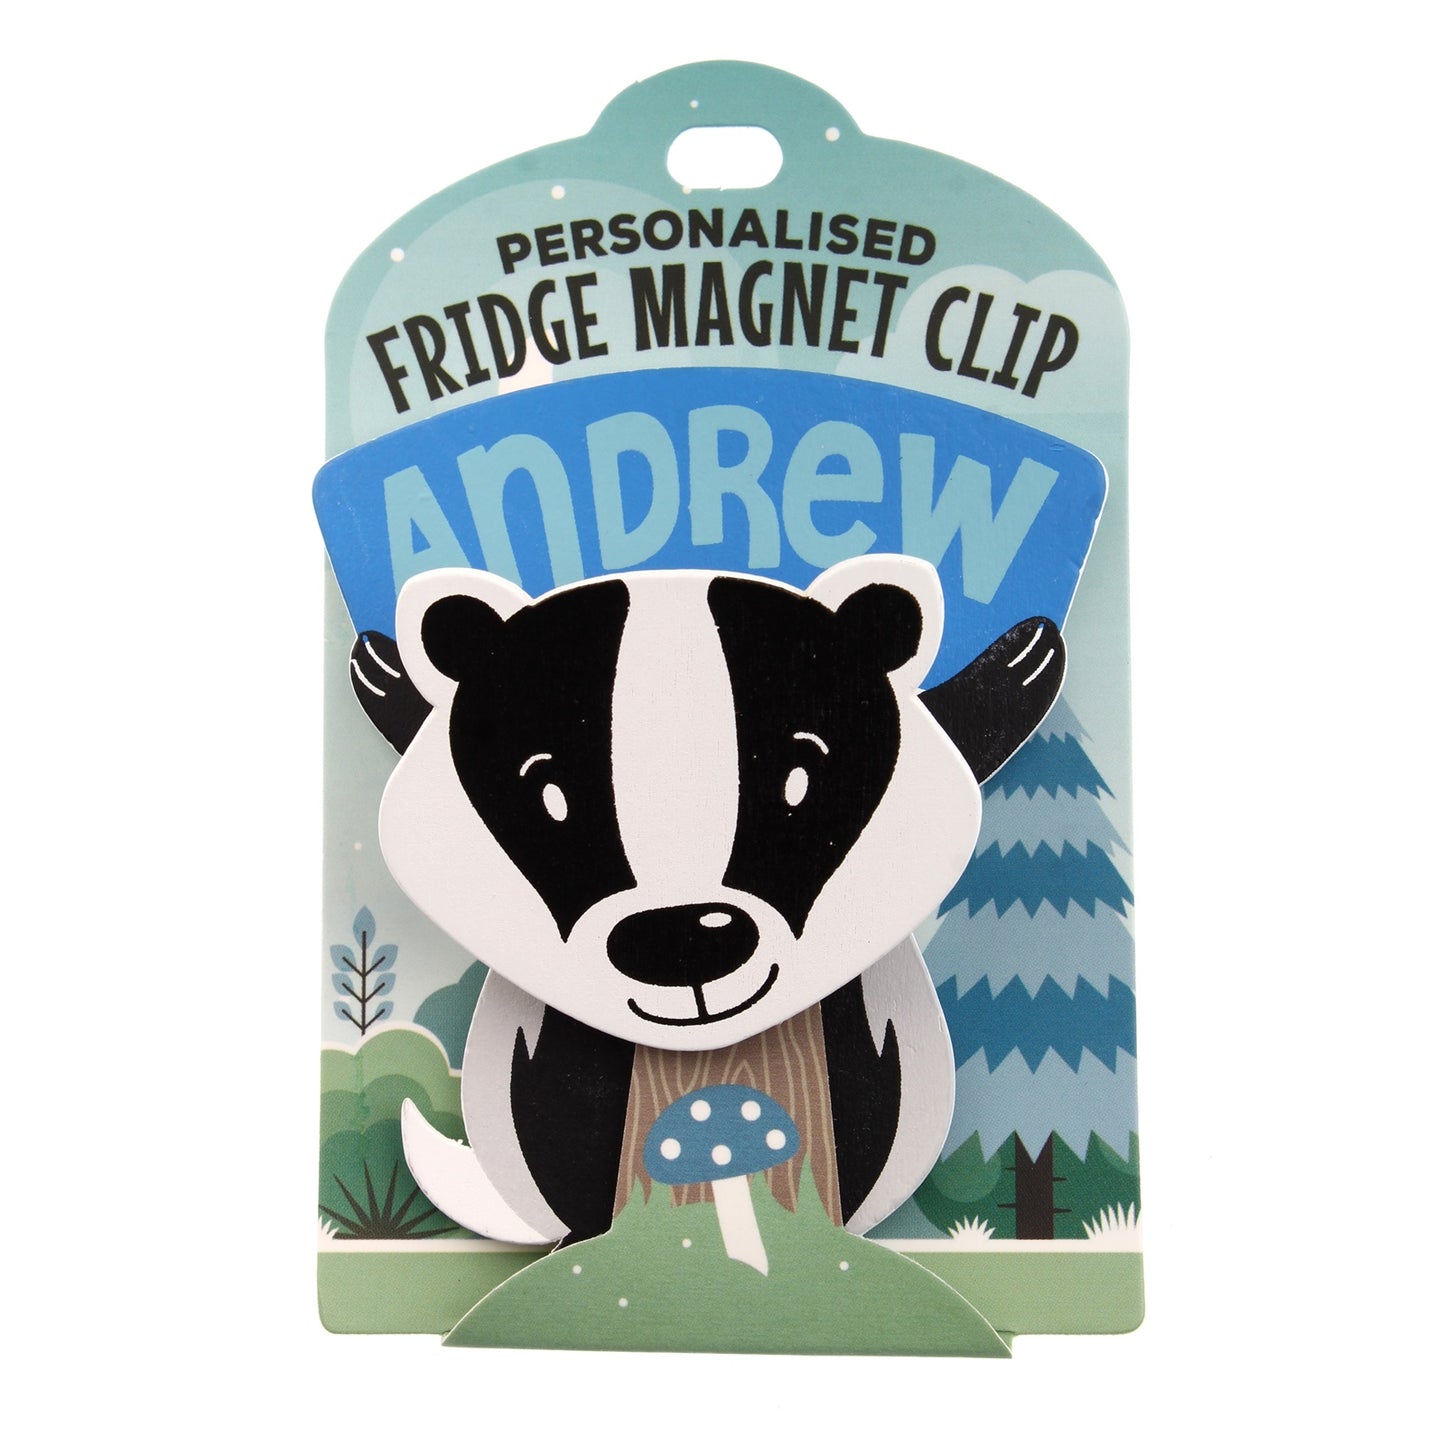 Fridge Magnet Clip Andrew